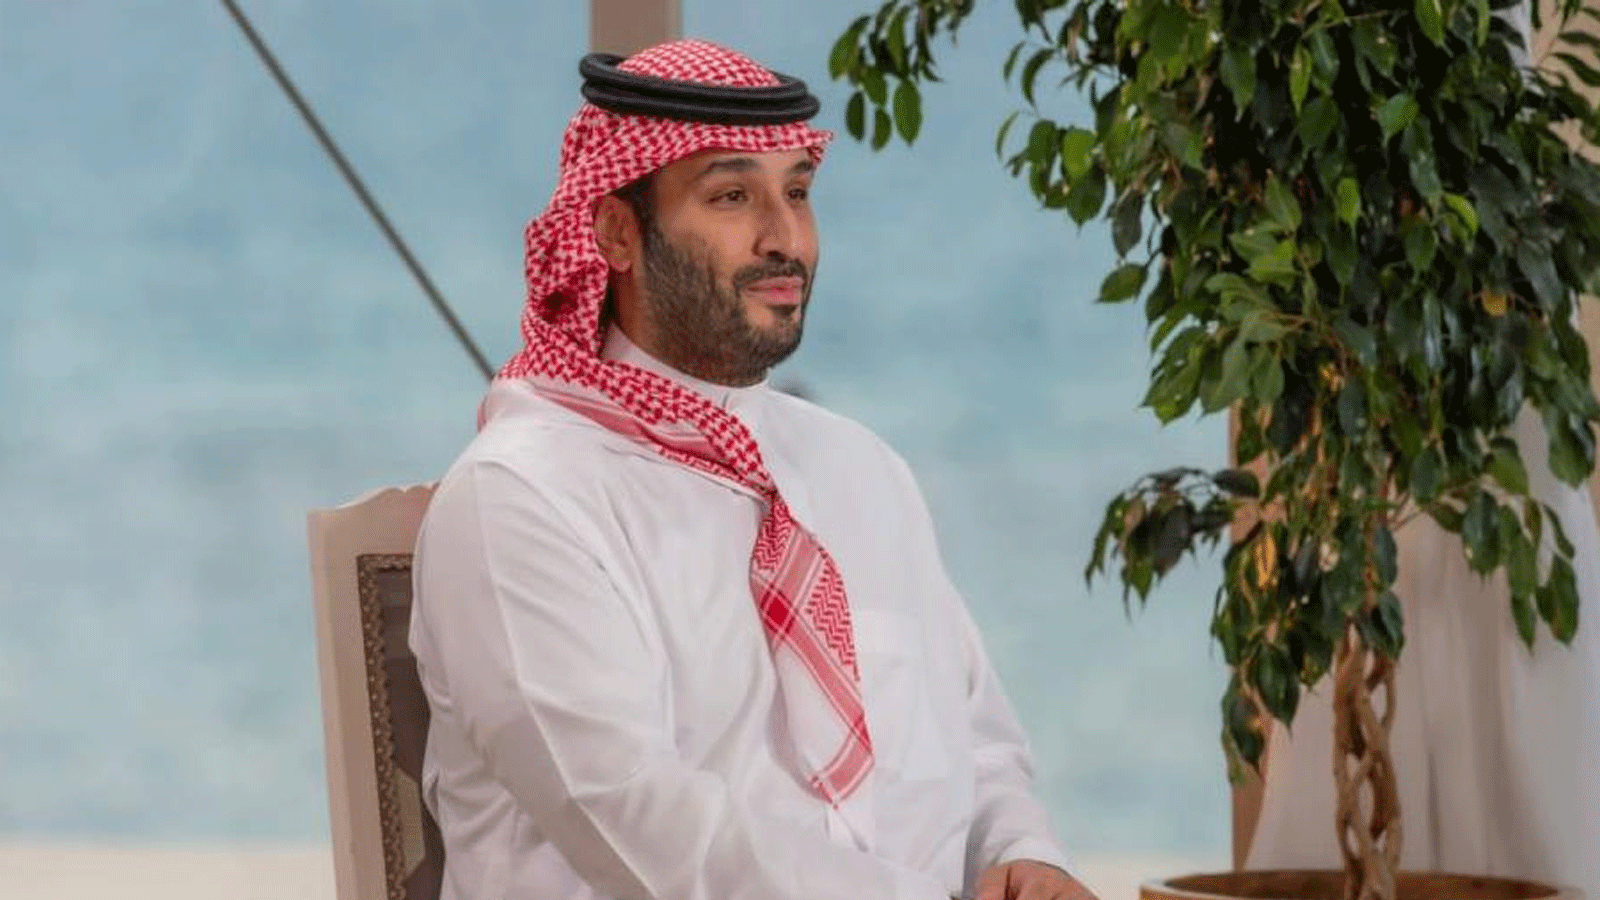 ولي العهد السعودي الأمير محمد بن سلمان بن عبدالعزيز خلال المقابلة مع قناة فوكس نيوز الأميركية في 